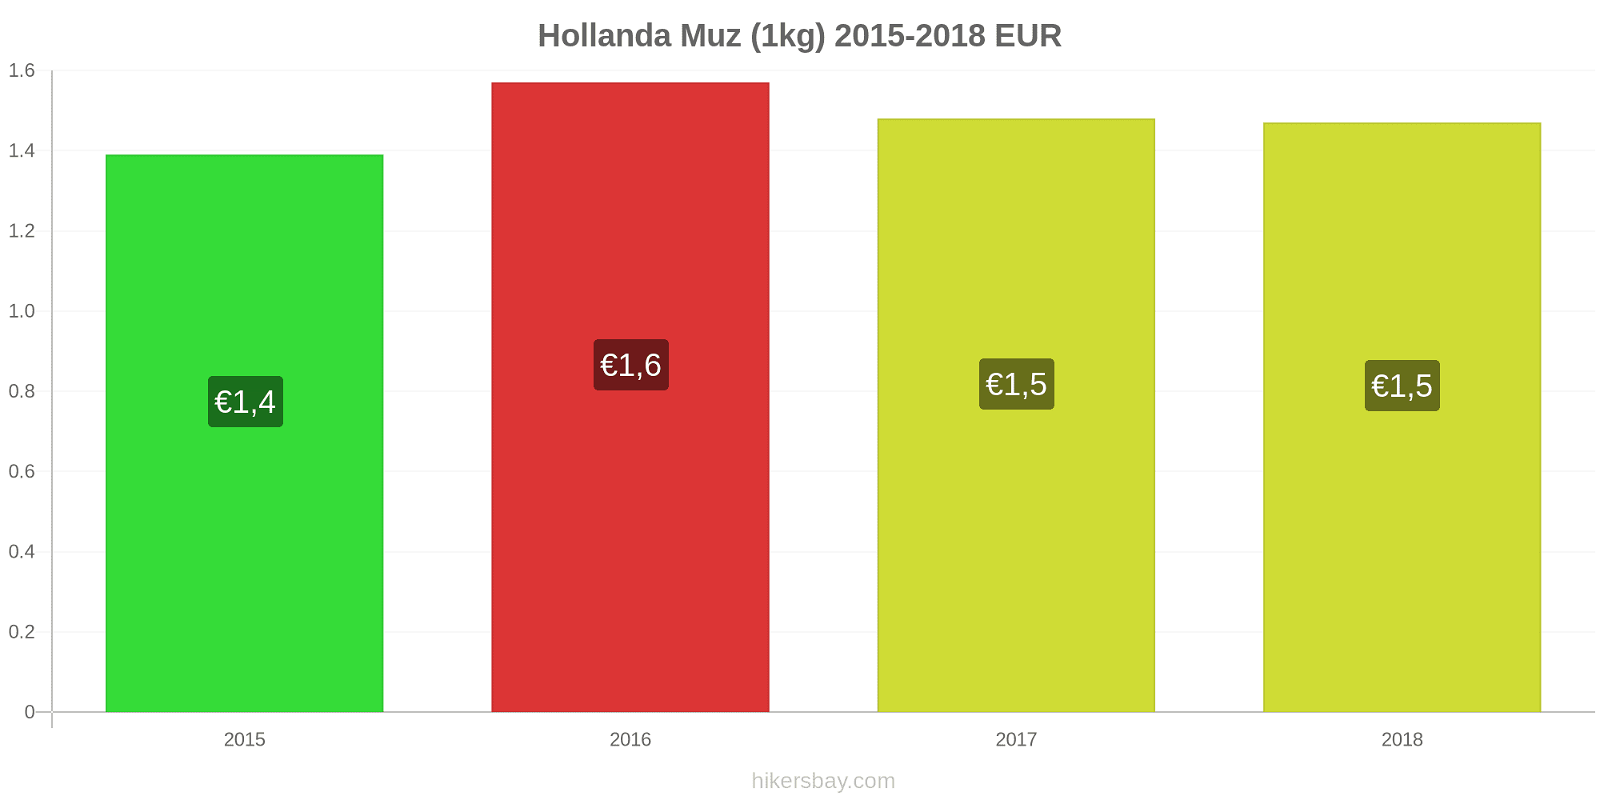 Hollanda fiyat değişiklikleri Muzlar (1kg) hikersbay.com